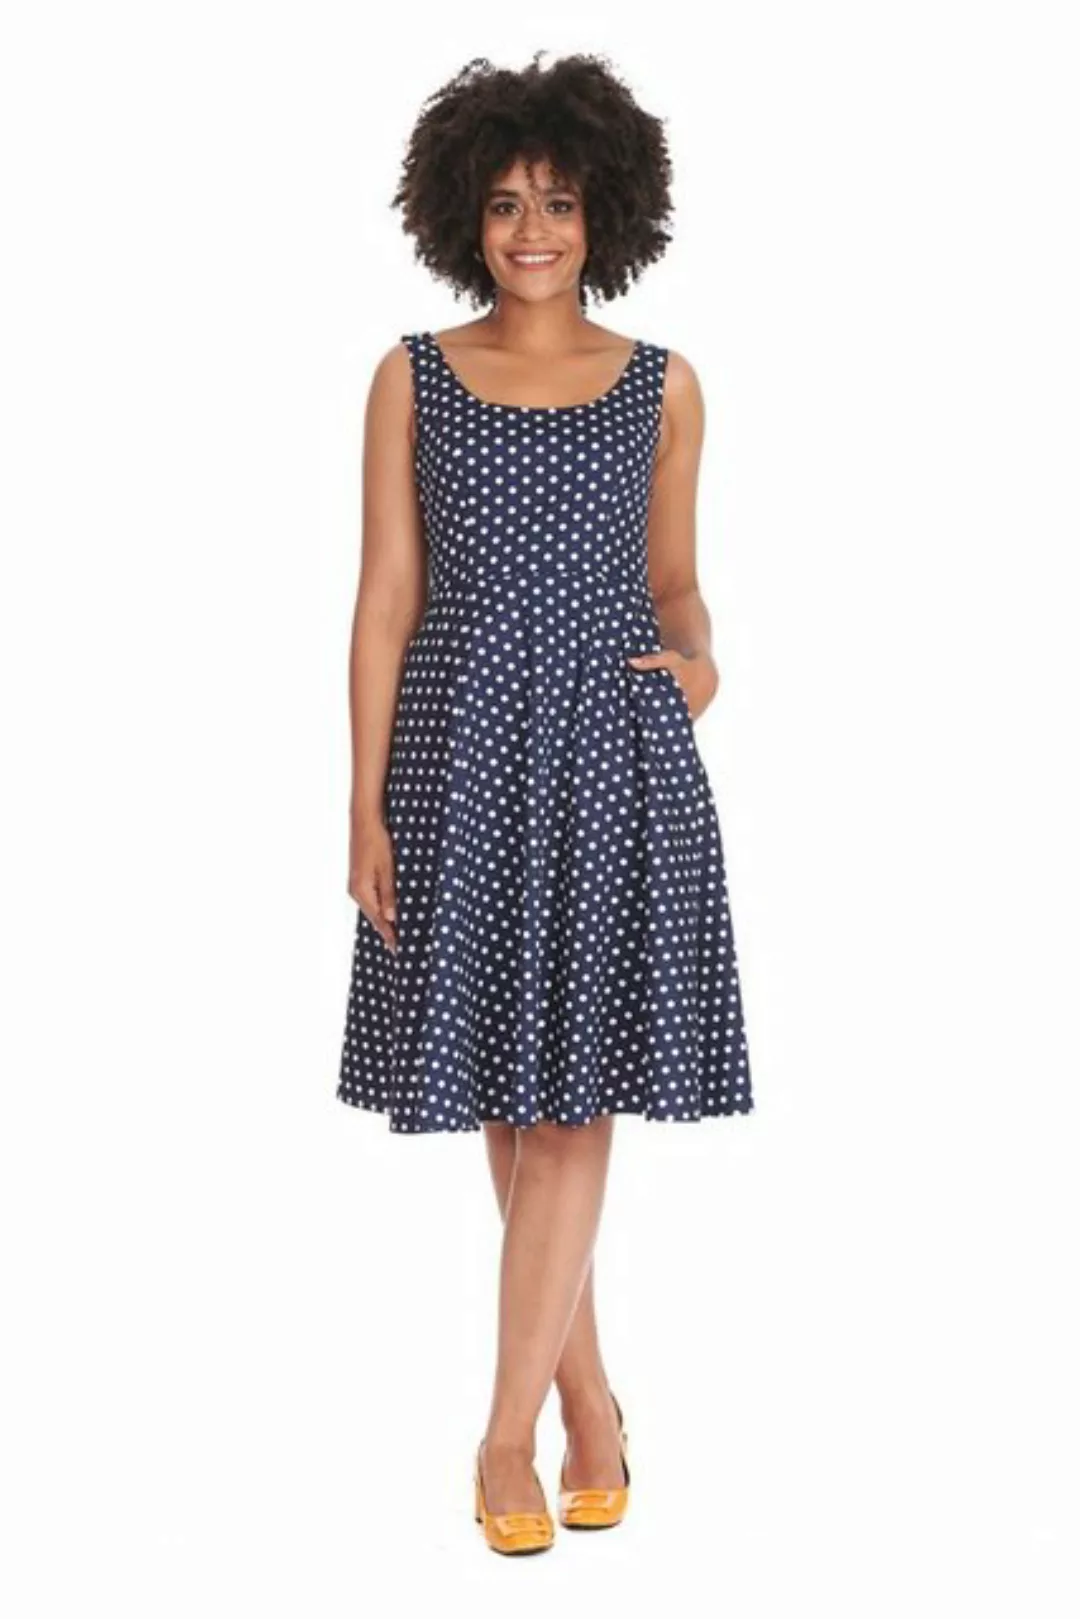 Banned A-Linien-Kleid Retro Swingkleid Dot Days Navy Blau Vintage Polka Dot günstig online kaufen